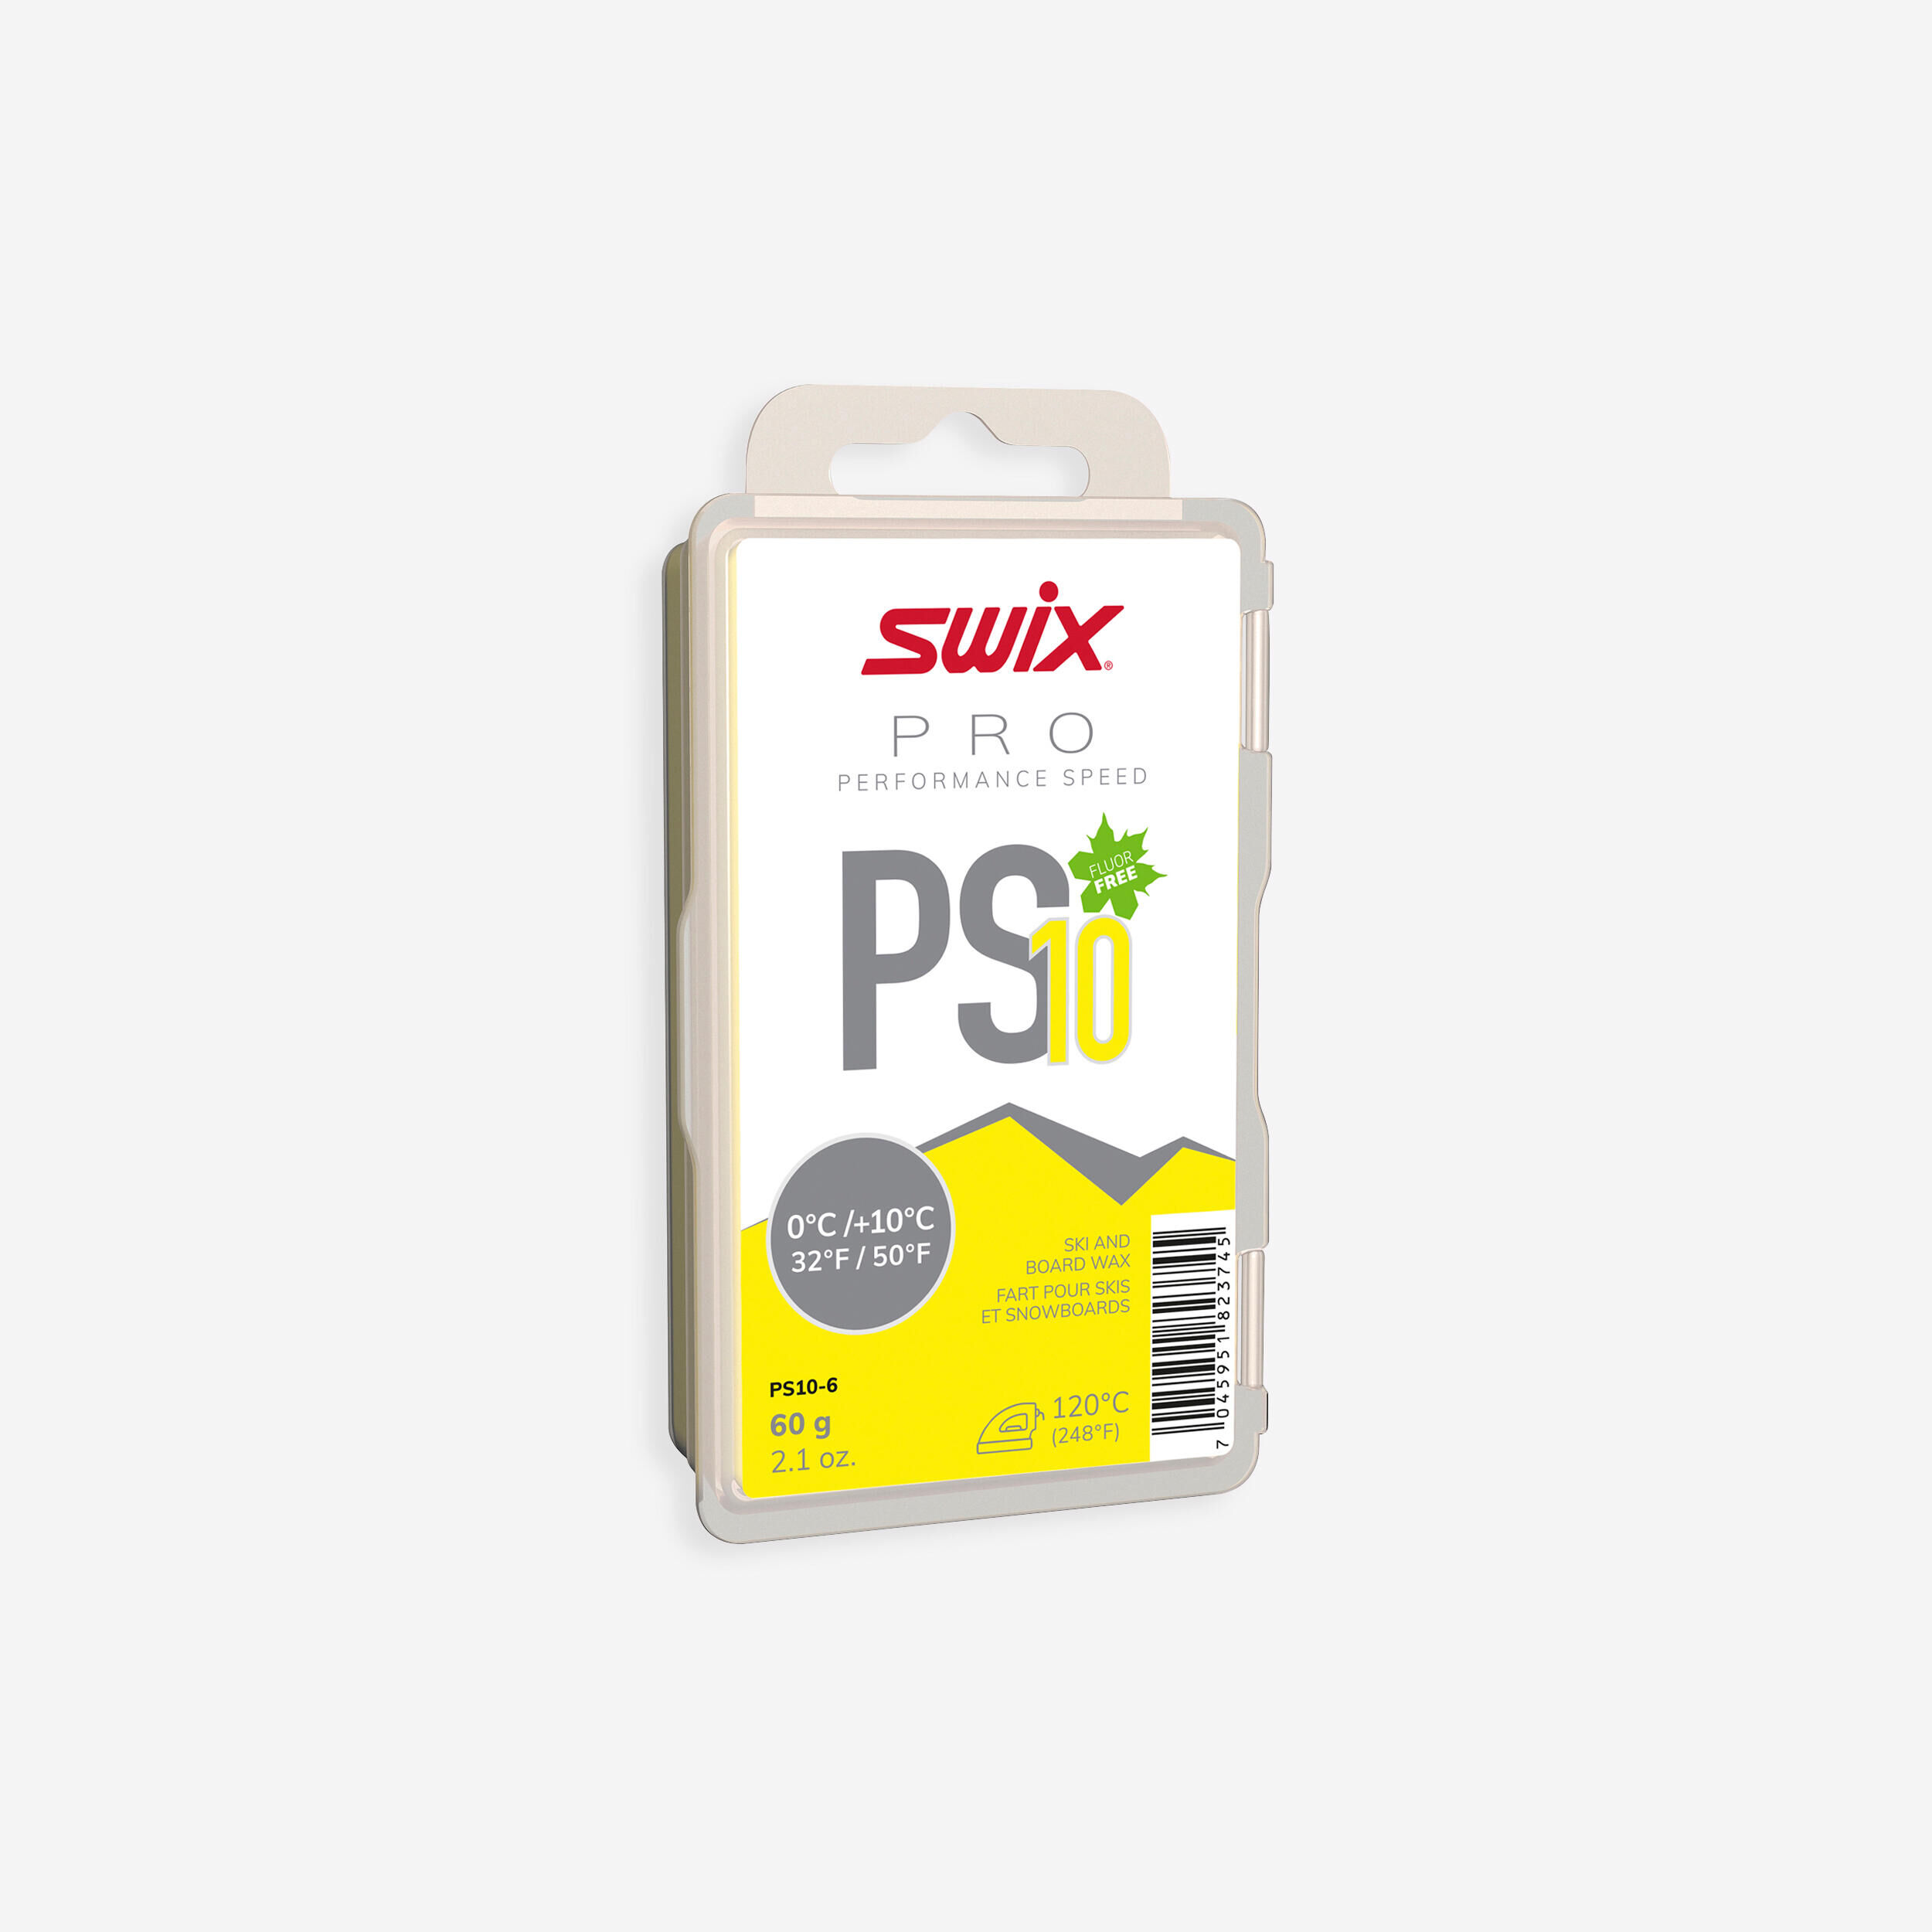 SWIX Warm wax - PS10 0°C/+10°C - 60g - yellow